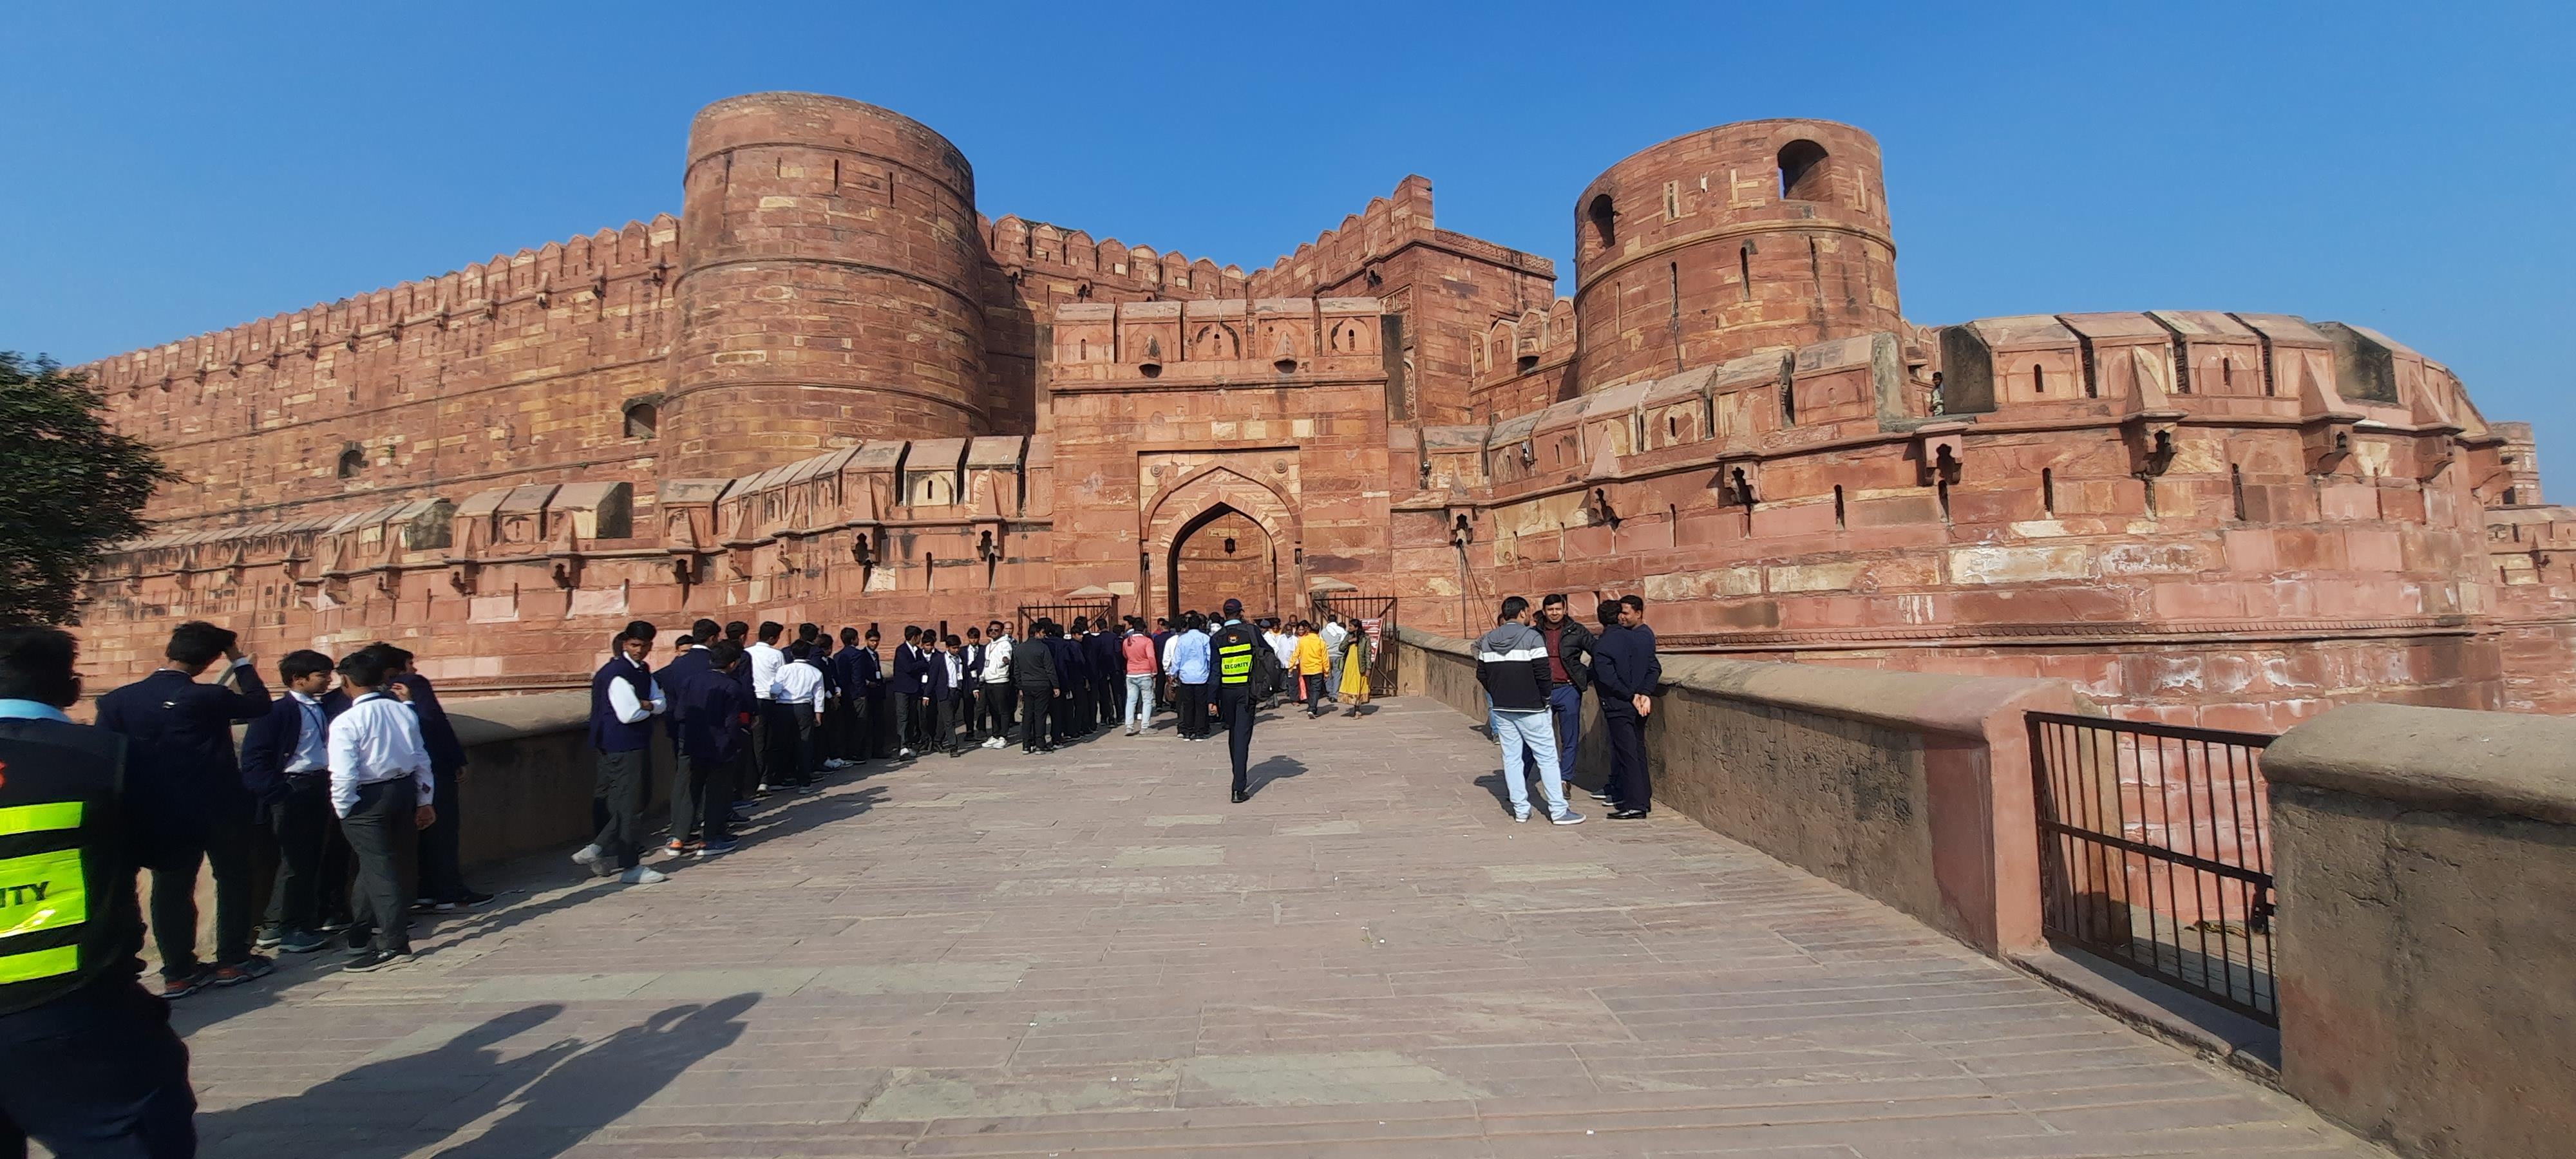 Excursion-a-Taj-Mahal-y-Agra-en-coche-desde-Delhi-1